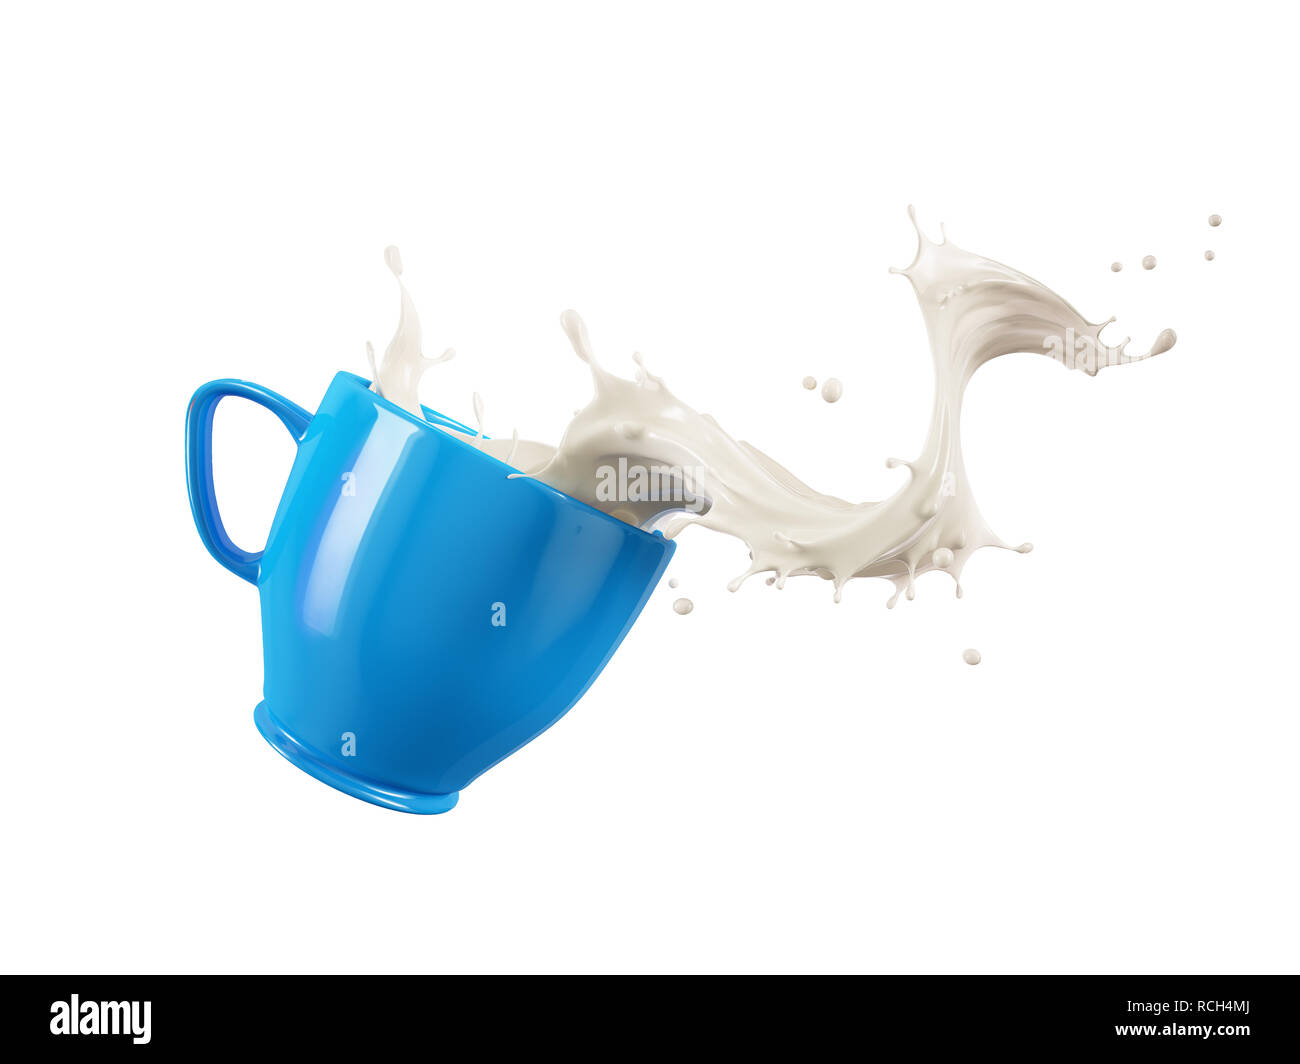 Blue cup la tazza con il latte splash wave. Isolato su sfondo bianco. Percorso di clipping incluso. Foto Stock